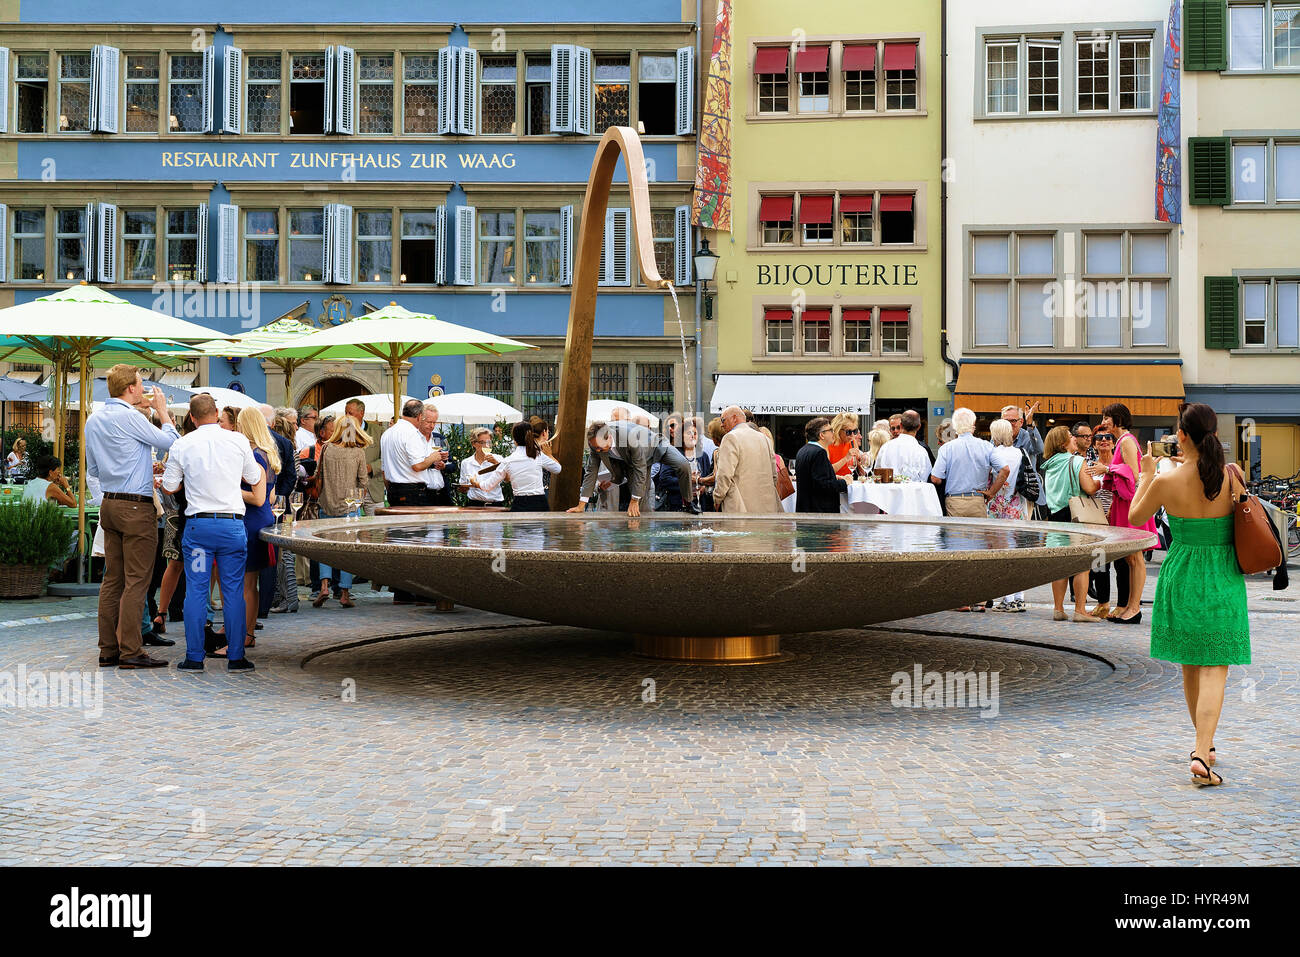 Zurich, Switzerland - September 2, 2016: People and fountain at Munsterhof square in Zurich, Switzerland Stock Photo